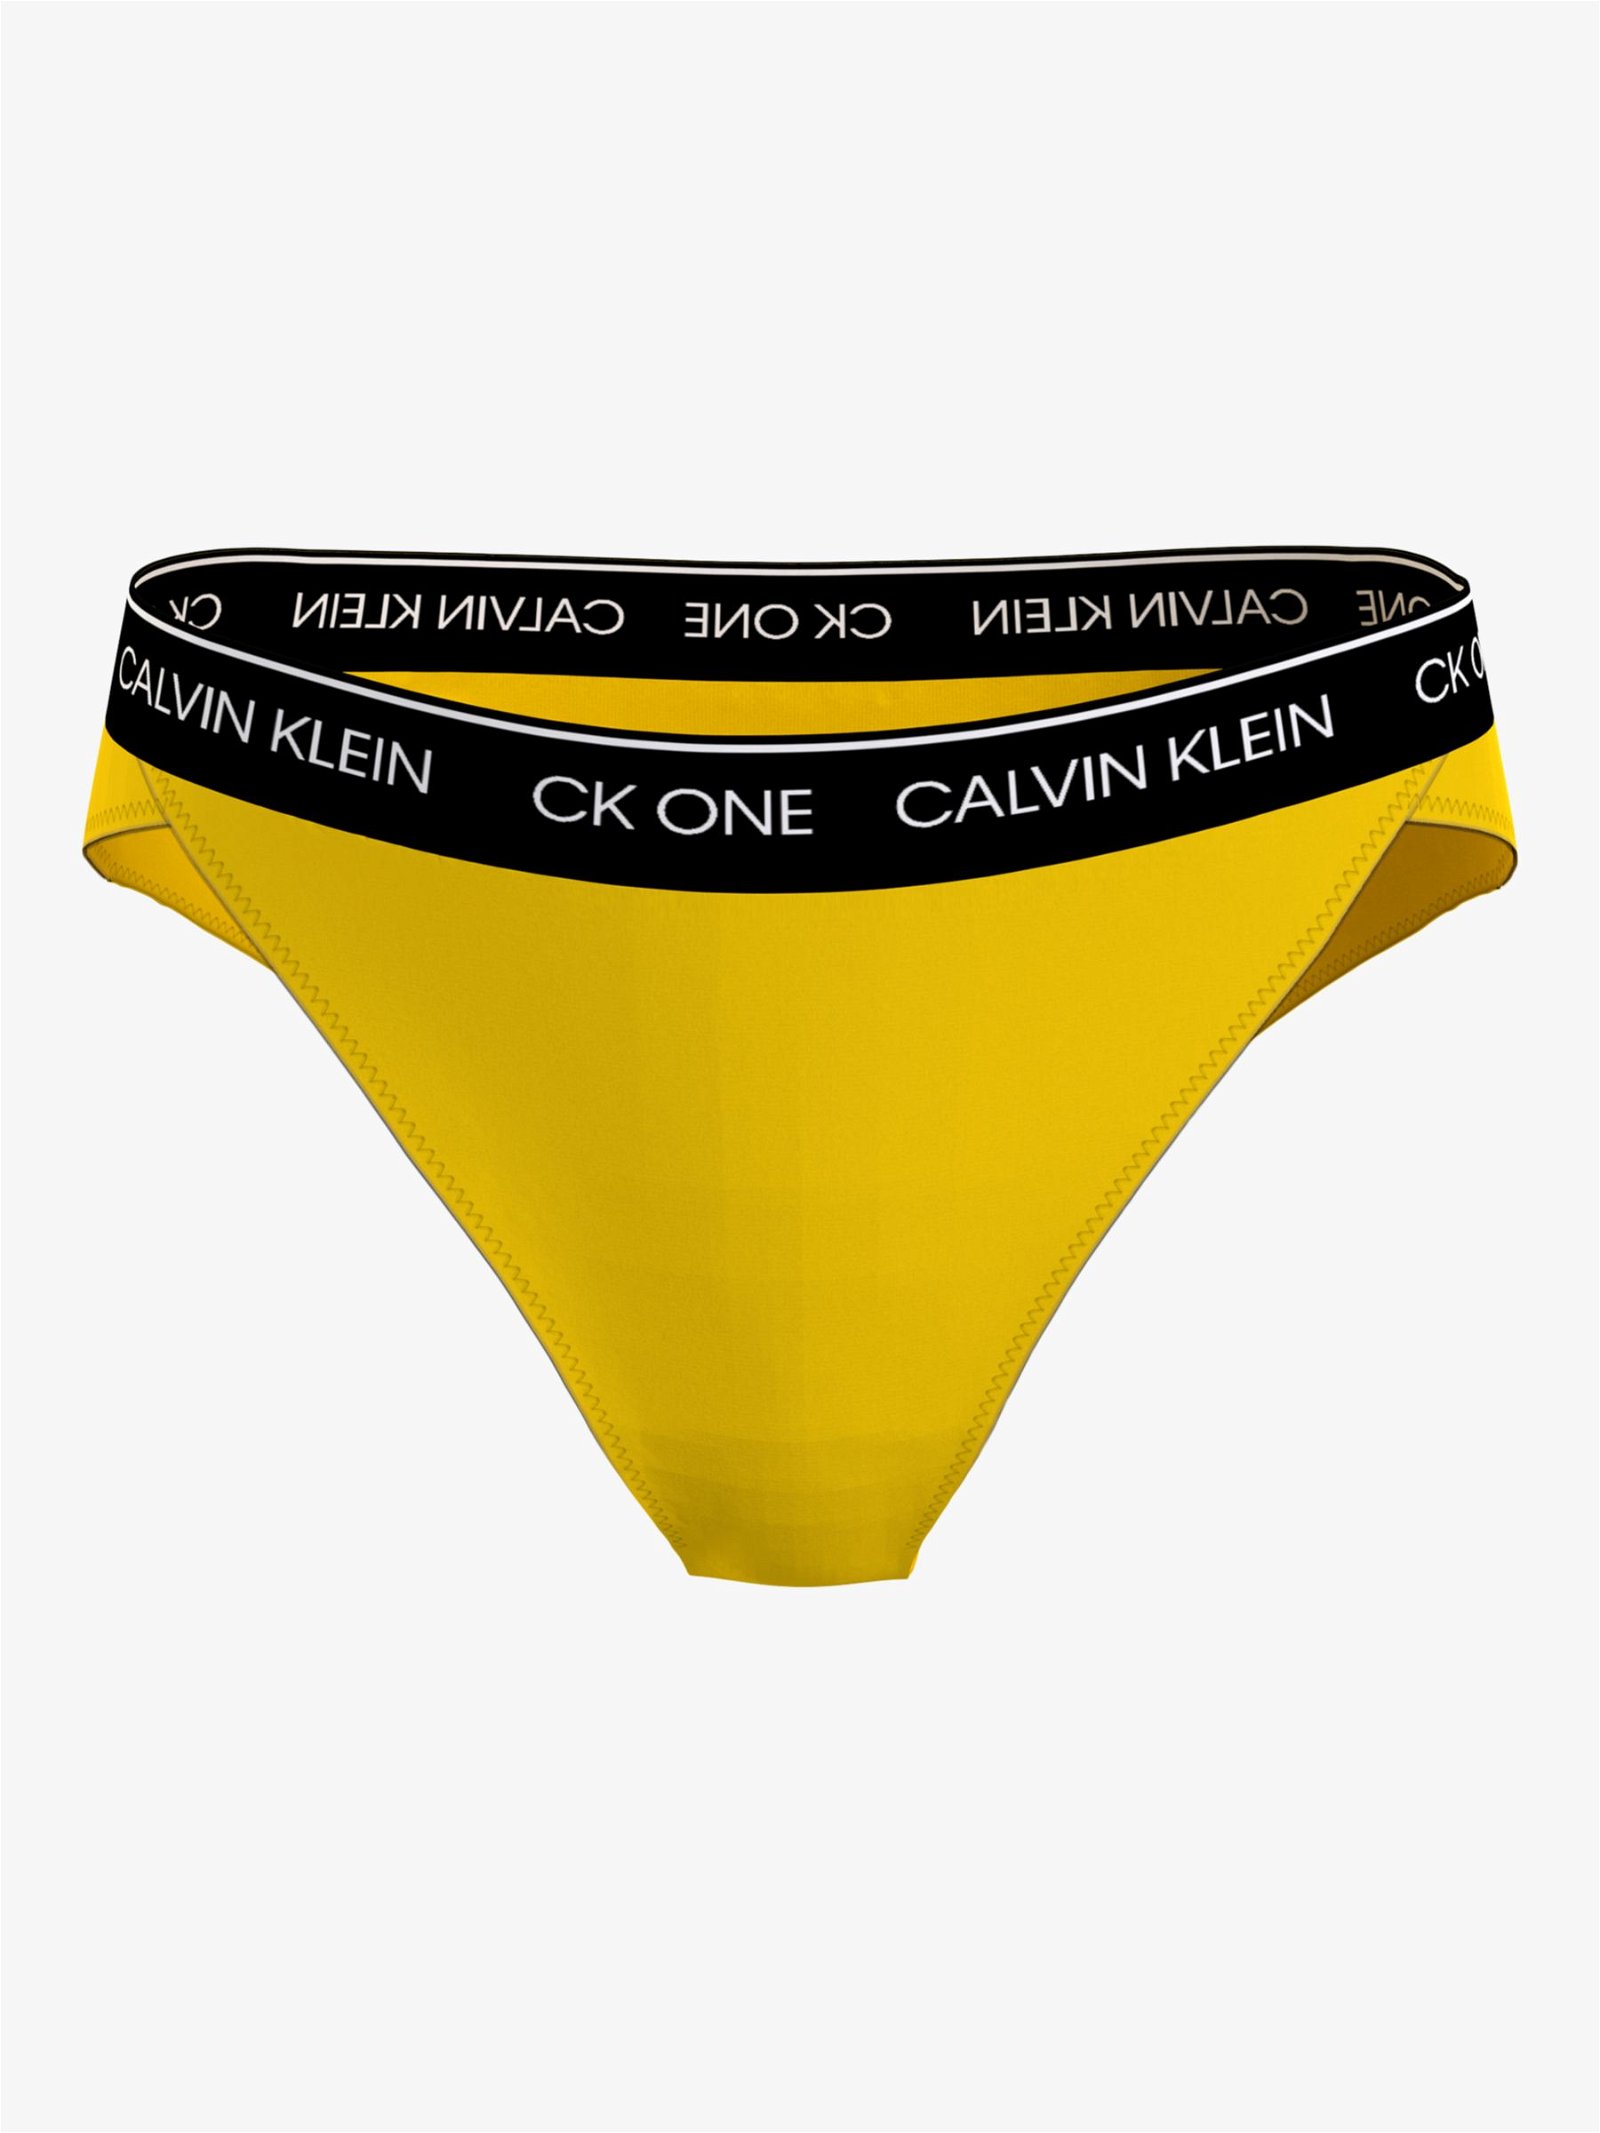 CALVIN KLEIN CK One High Waist Cheeky Bikini Bottoms in Bold